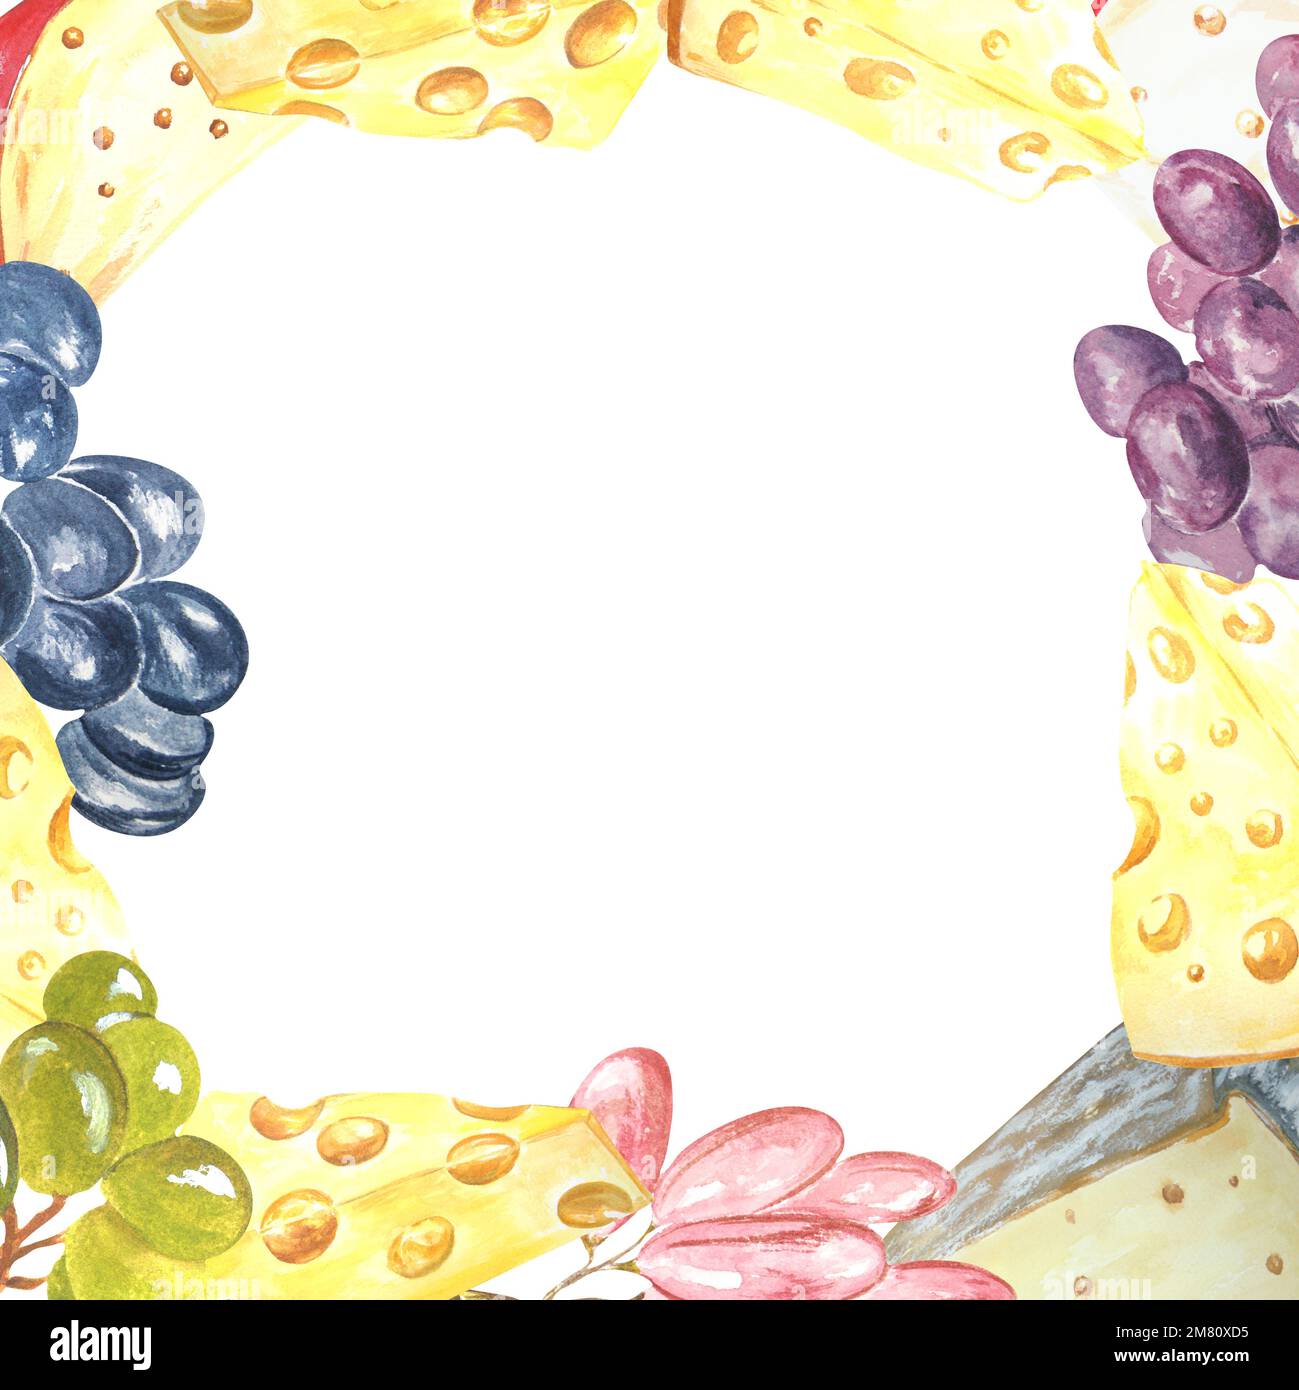 Cadre aquarelle avec fromage et raisins sur fond blanc. La trame peut être utilisée comme élément pour les projets, les marchandises, les cartes postales et les marques commerciales Banque D'Images